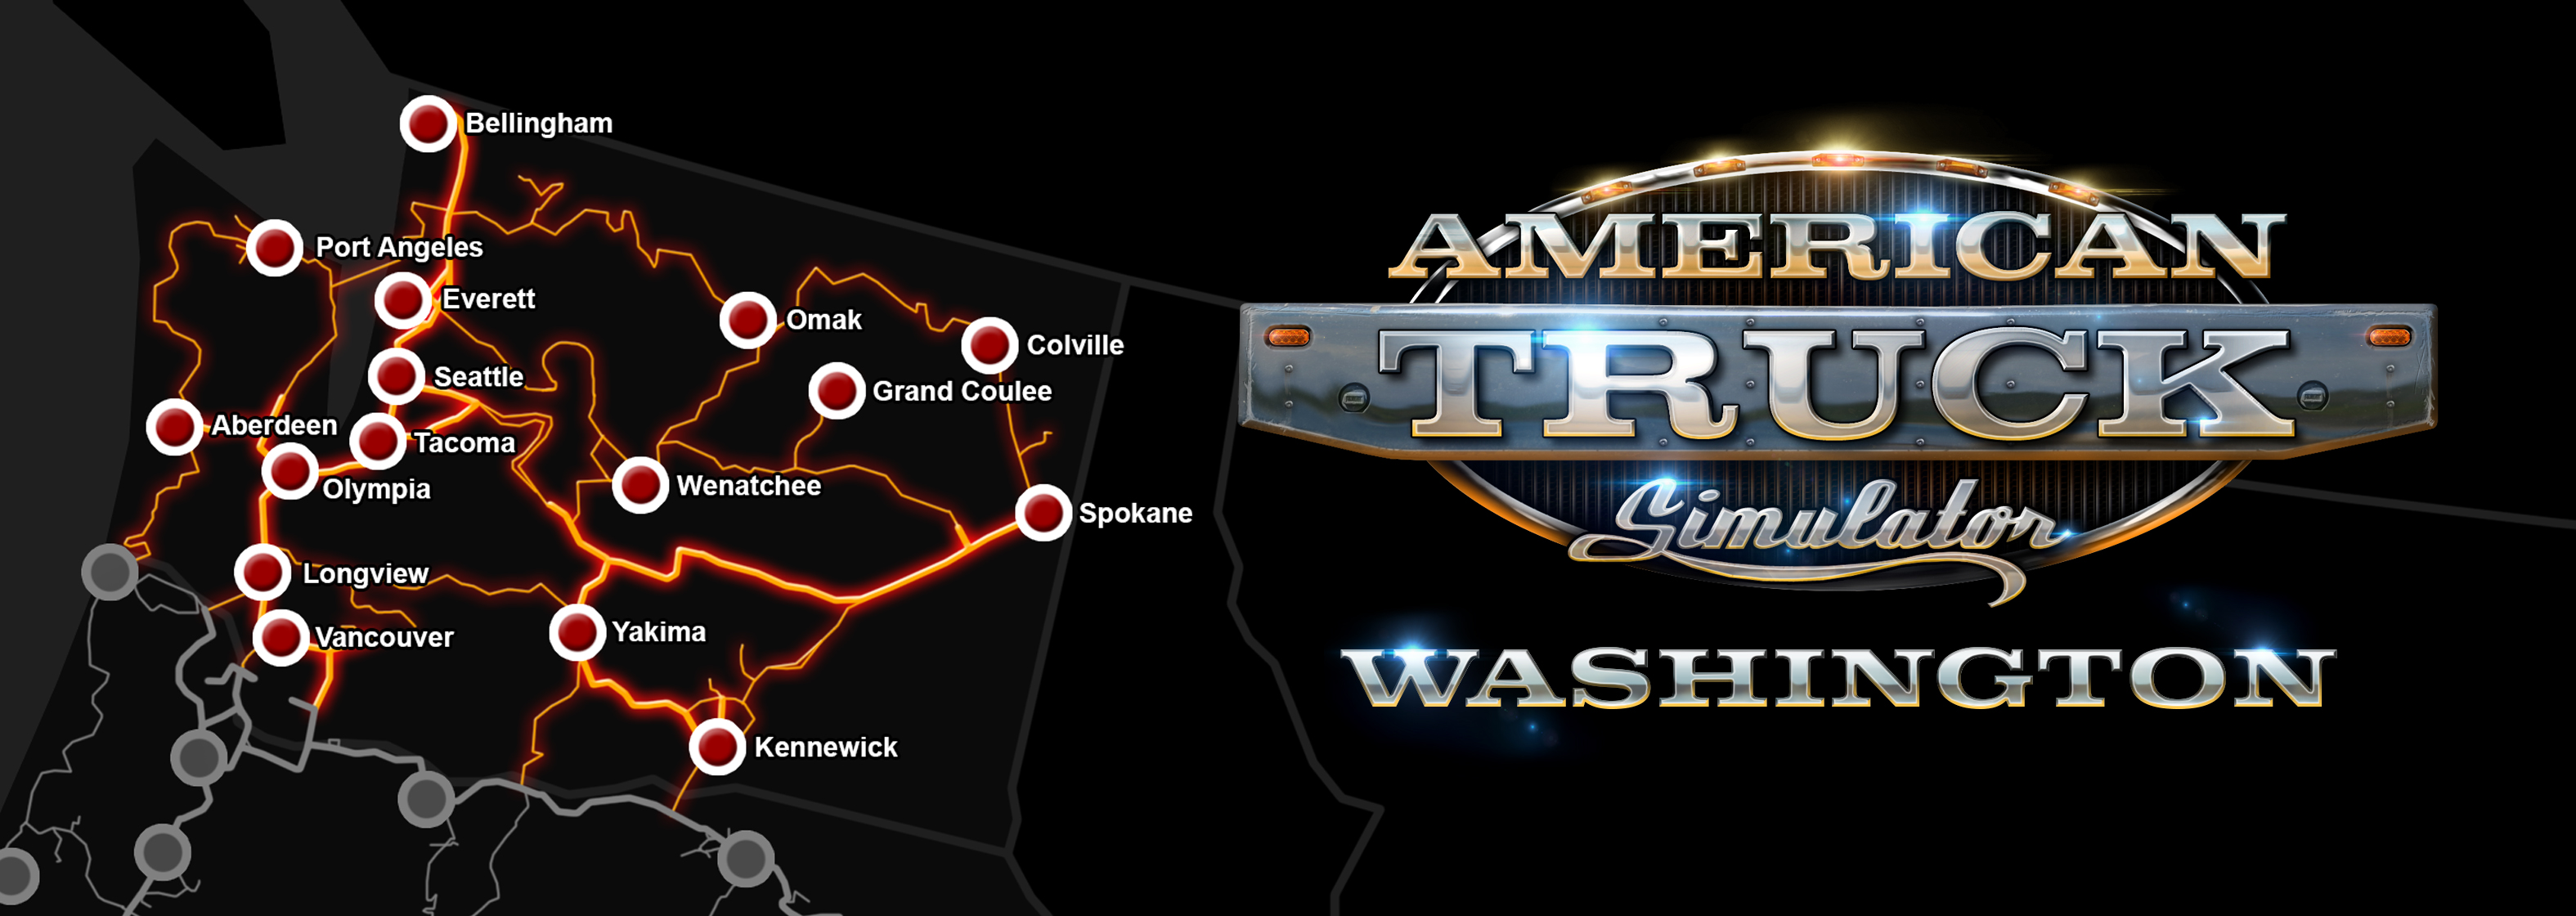 Что дает длс. American Truck Simulator Washington карта. ATS Washington Map. American Truck Simulator DLC Map. American Truck Simulator карта Штатов.